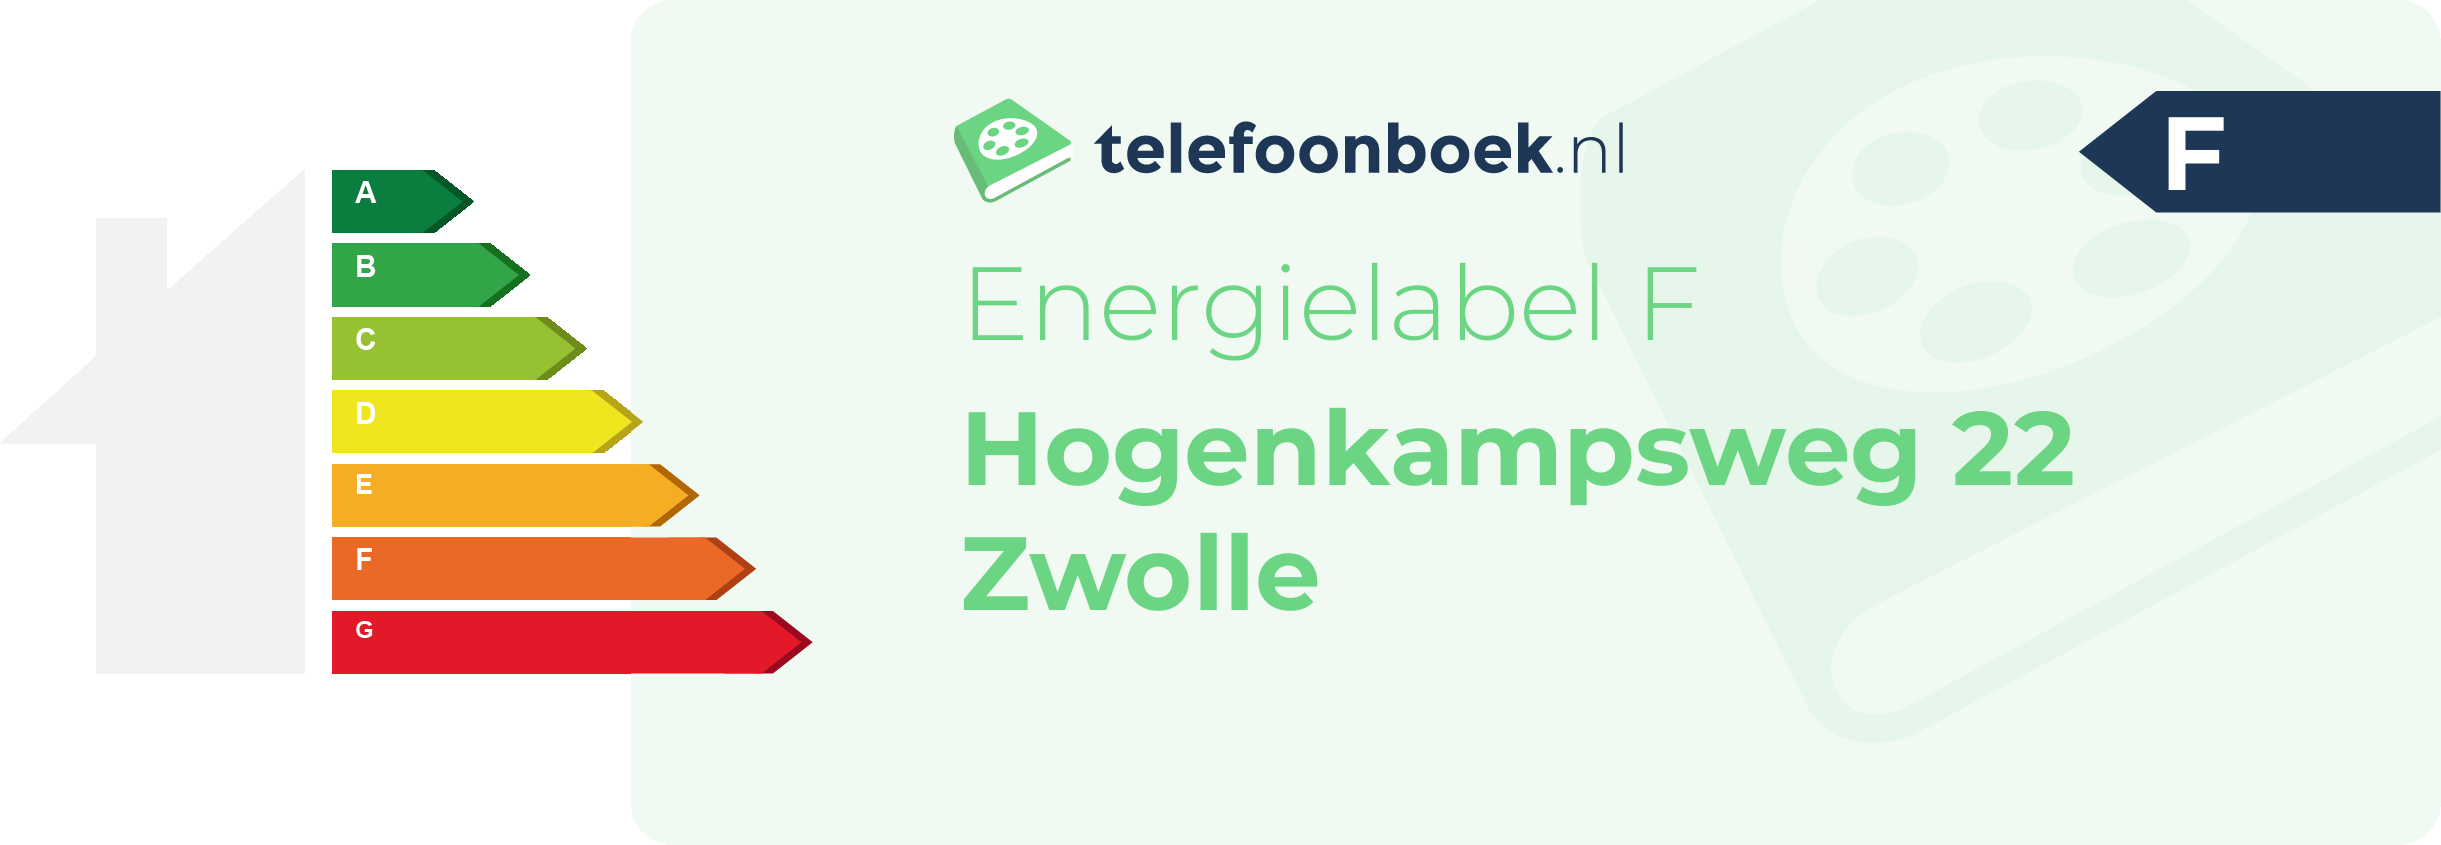 Energielabel Hogenkampsweg 22 Zwolle